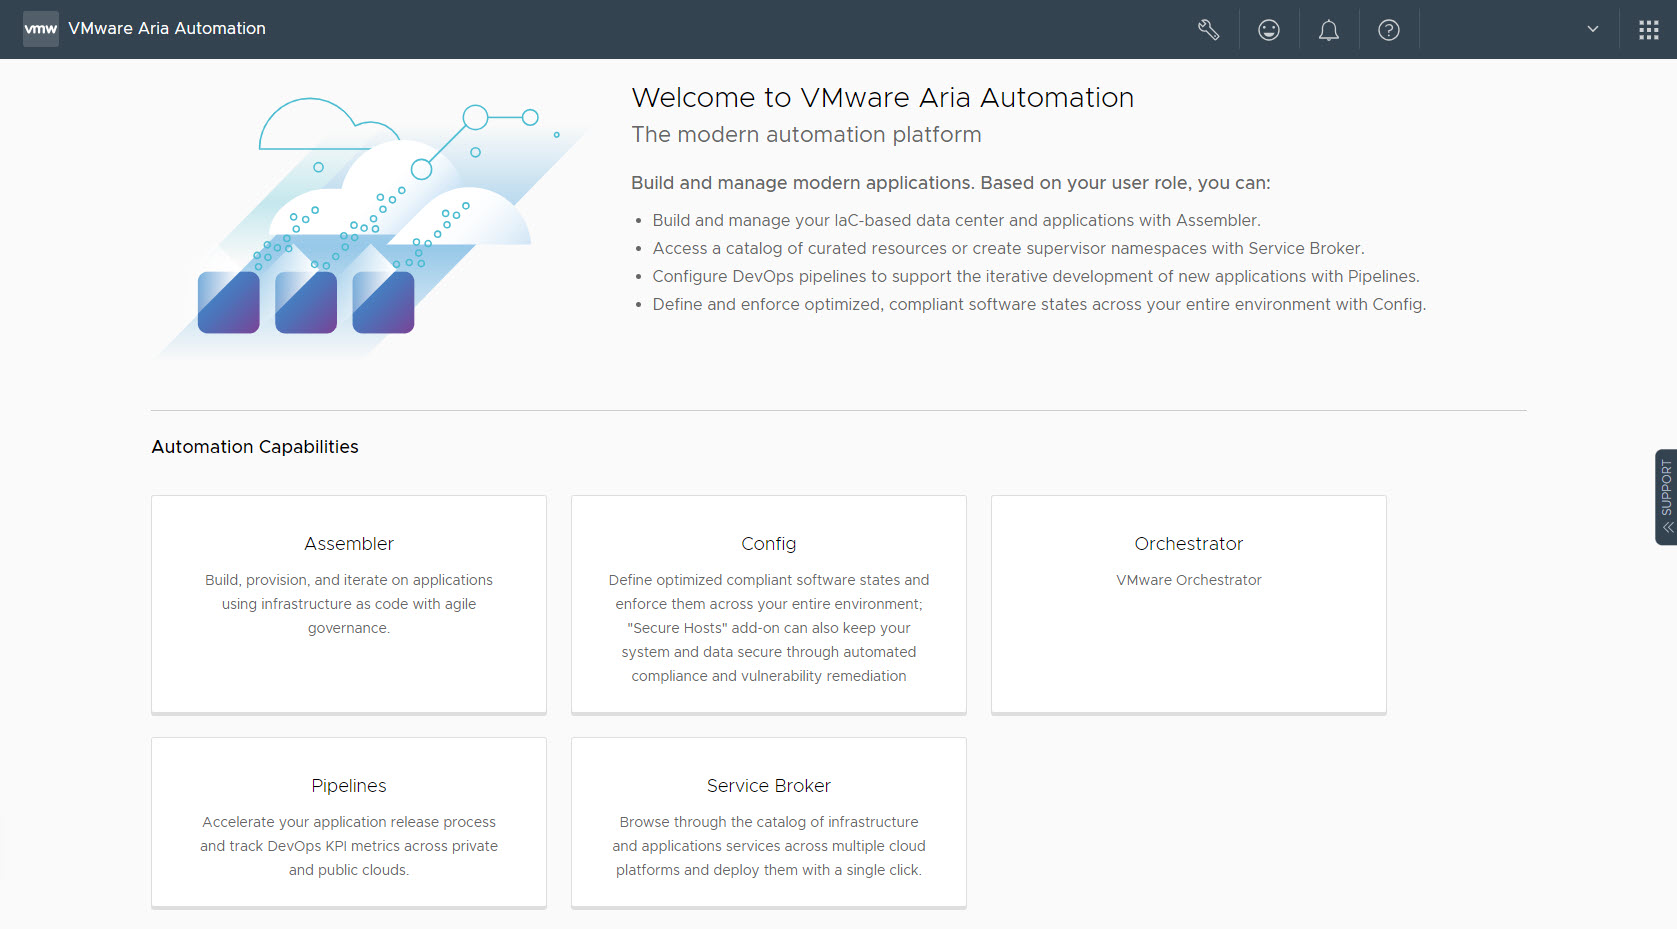 VMware Aria Automation 랜딩 페이지입니다.